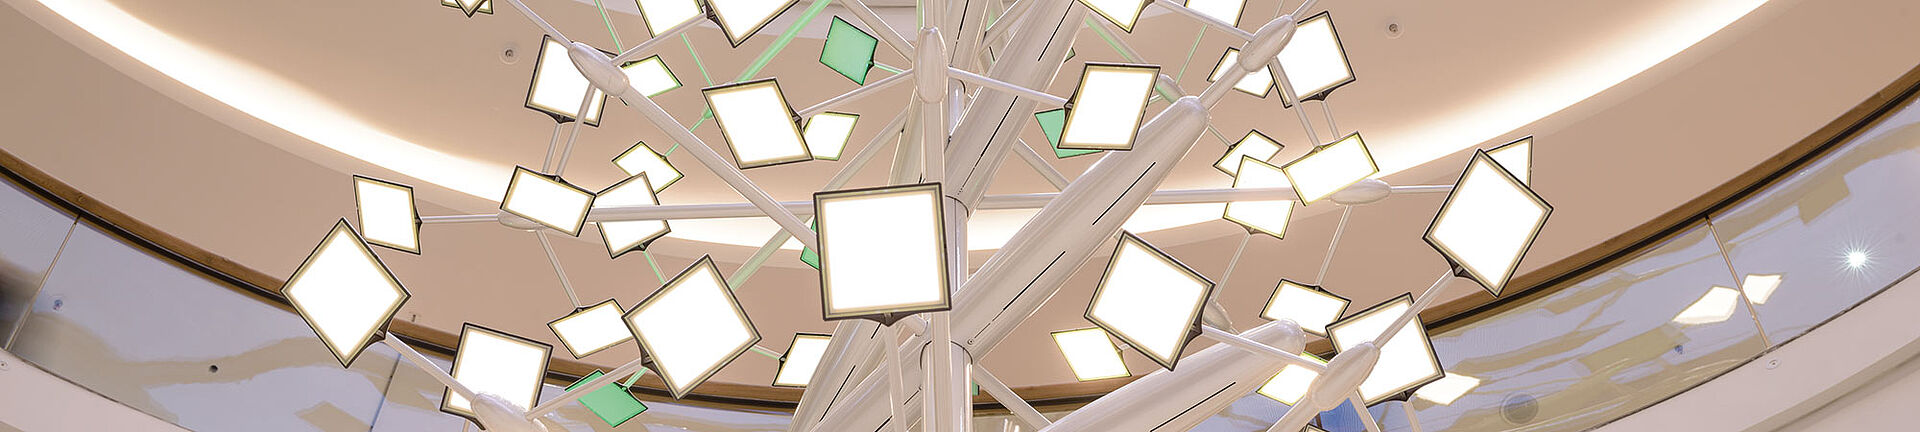 LED Lichtdesign Lichtskulptur Carl Stahl Architektur